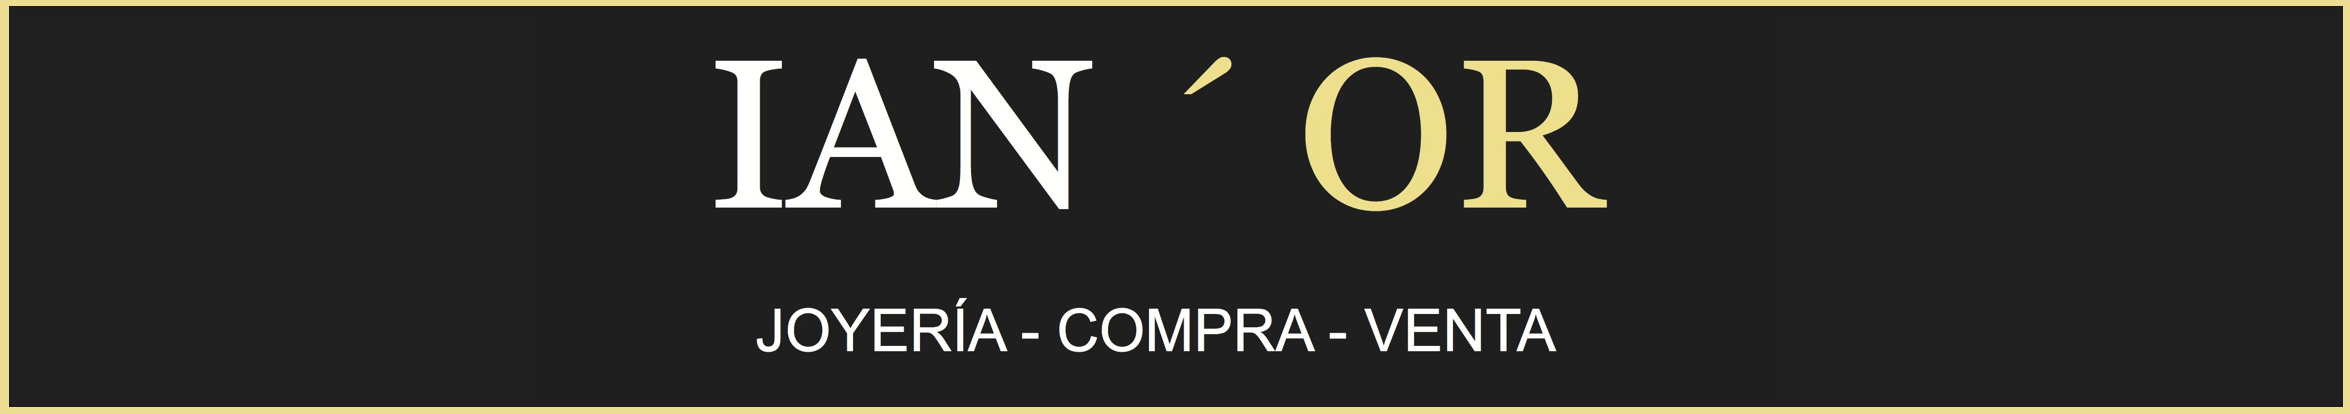 Logo Joyería IAN'OR - Compra Venta de oro en Barcelona al mejor precio. Tasación de joyas.